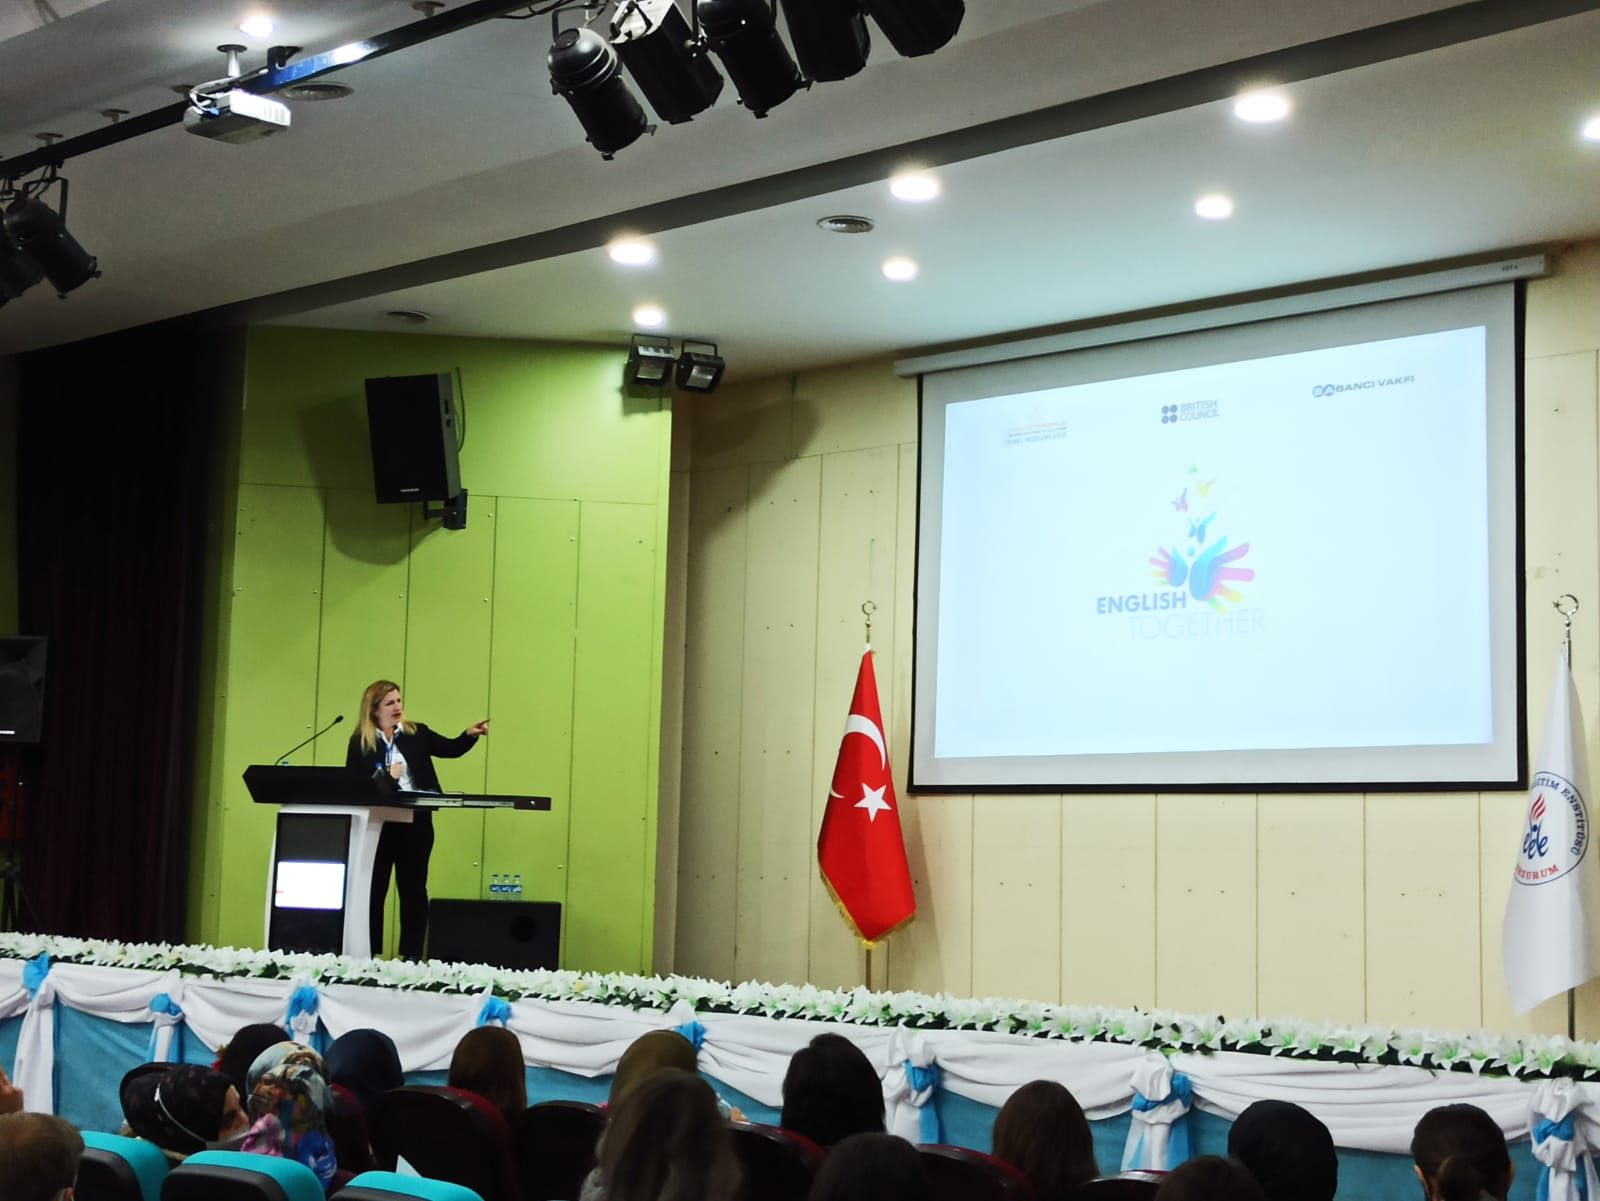 71 ilden İngilizce öğretmenleri, Erzurum’da ‘Birlikte İngilizce’ projesi için bir araya geldi